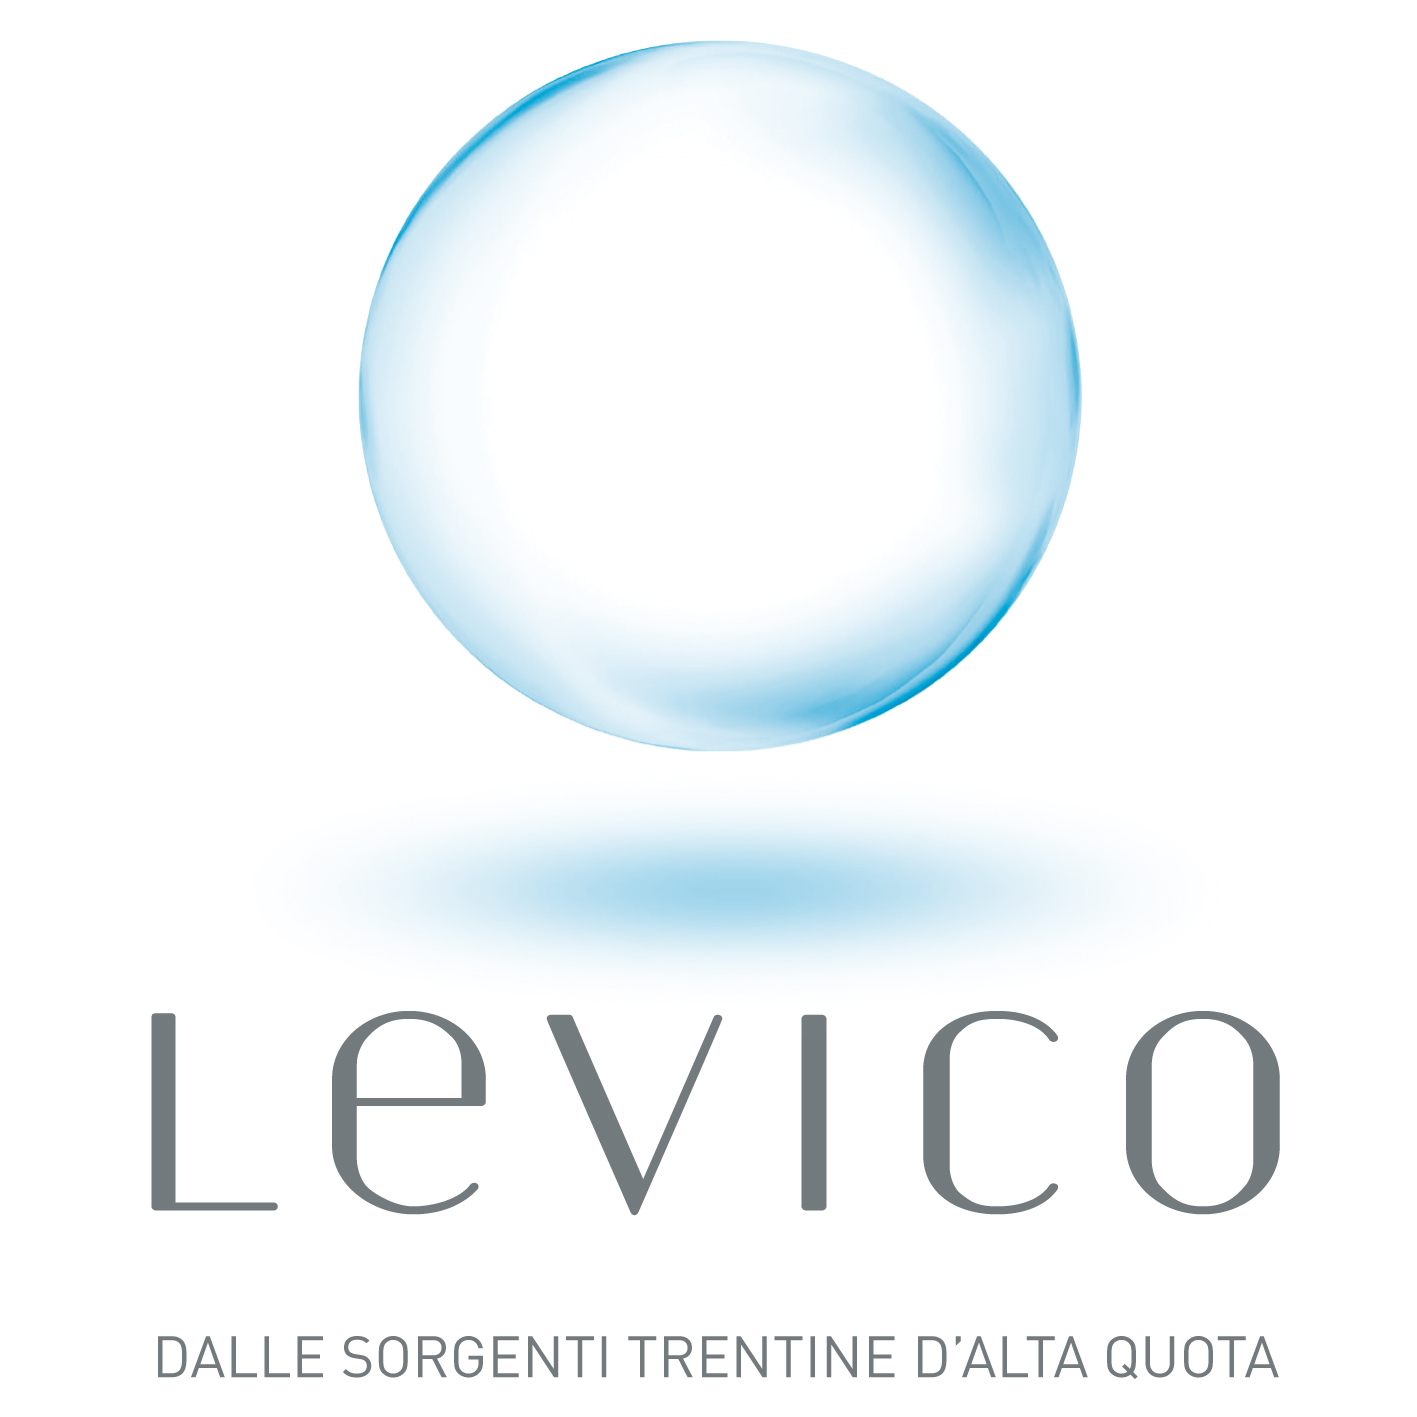 Logo LEVICO 300dpi